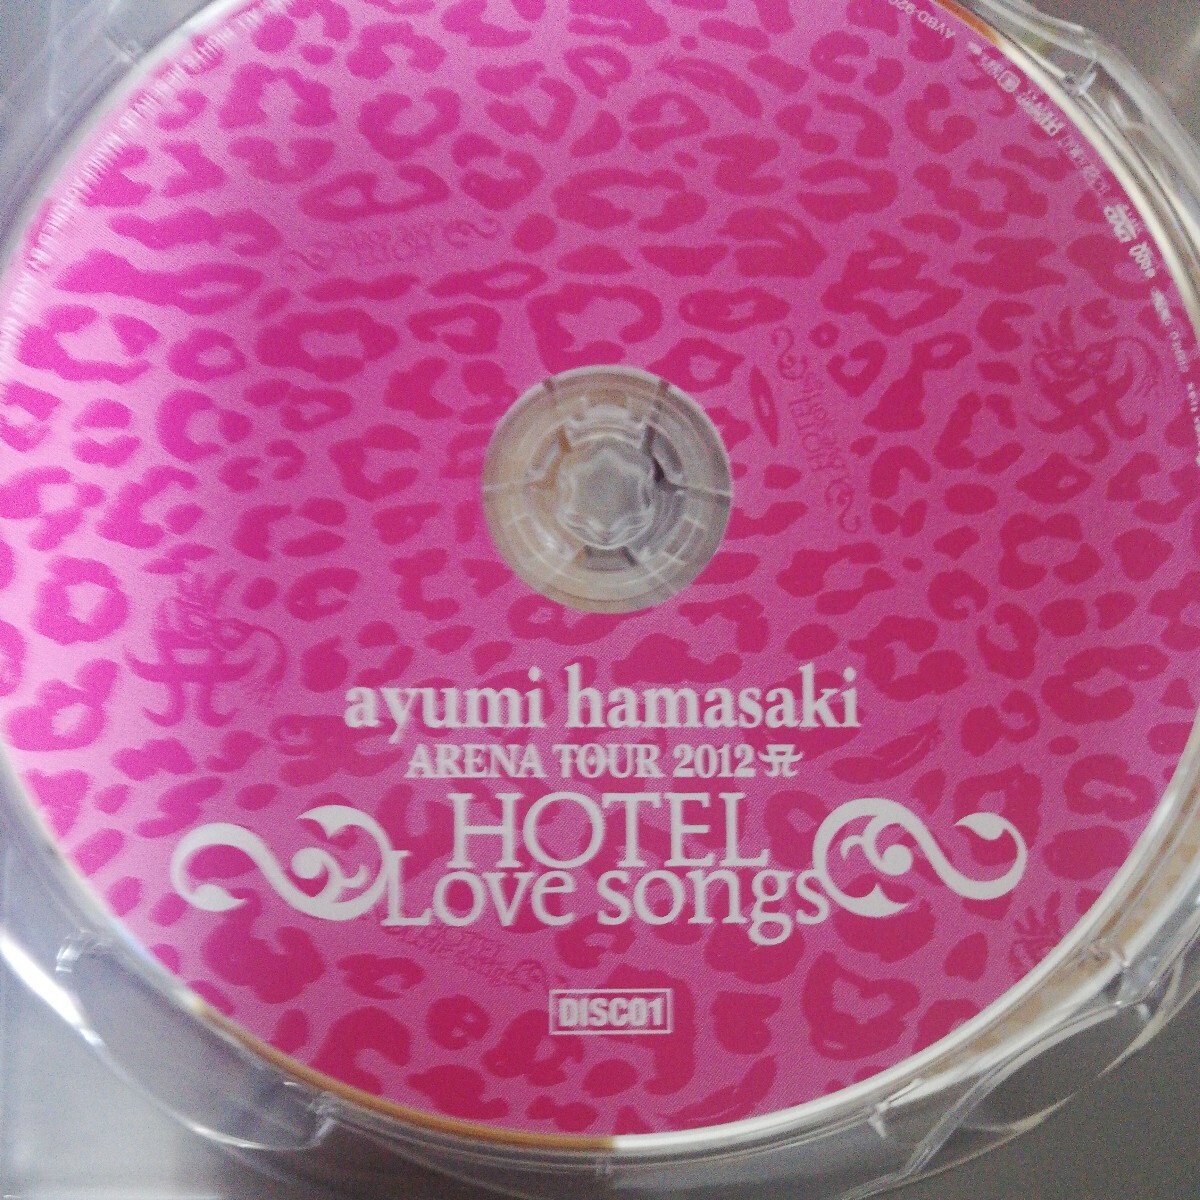 [国内盤DVD] 浜崎あゆみ/ayumi hamasaki ARENA TOUR 2012 Ａ〜HOTEL Love songs〜 〈2枚組〉 [2枚組]_画像6